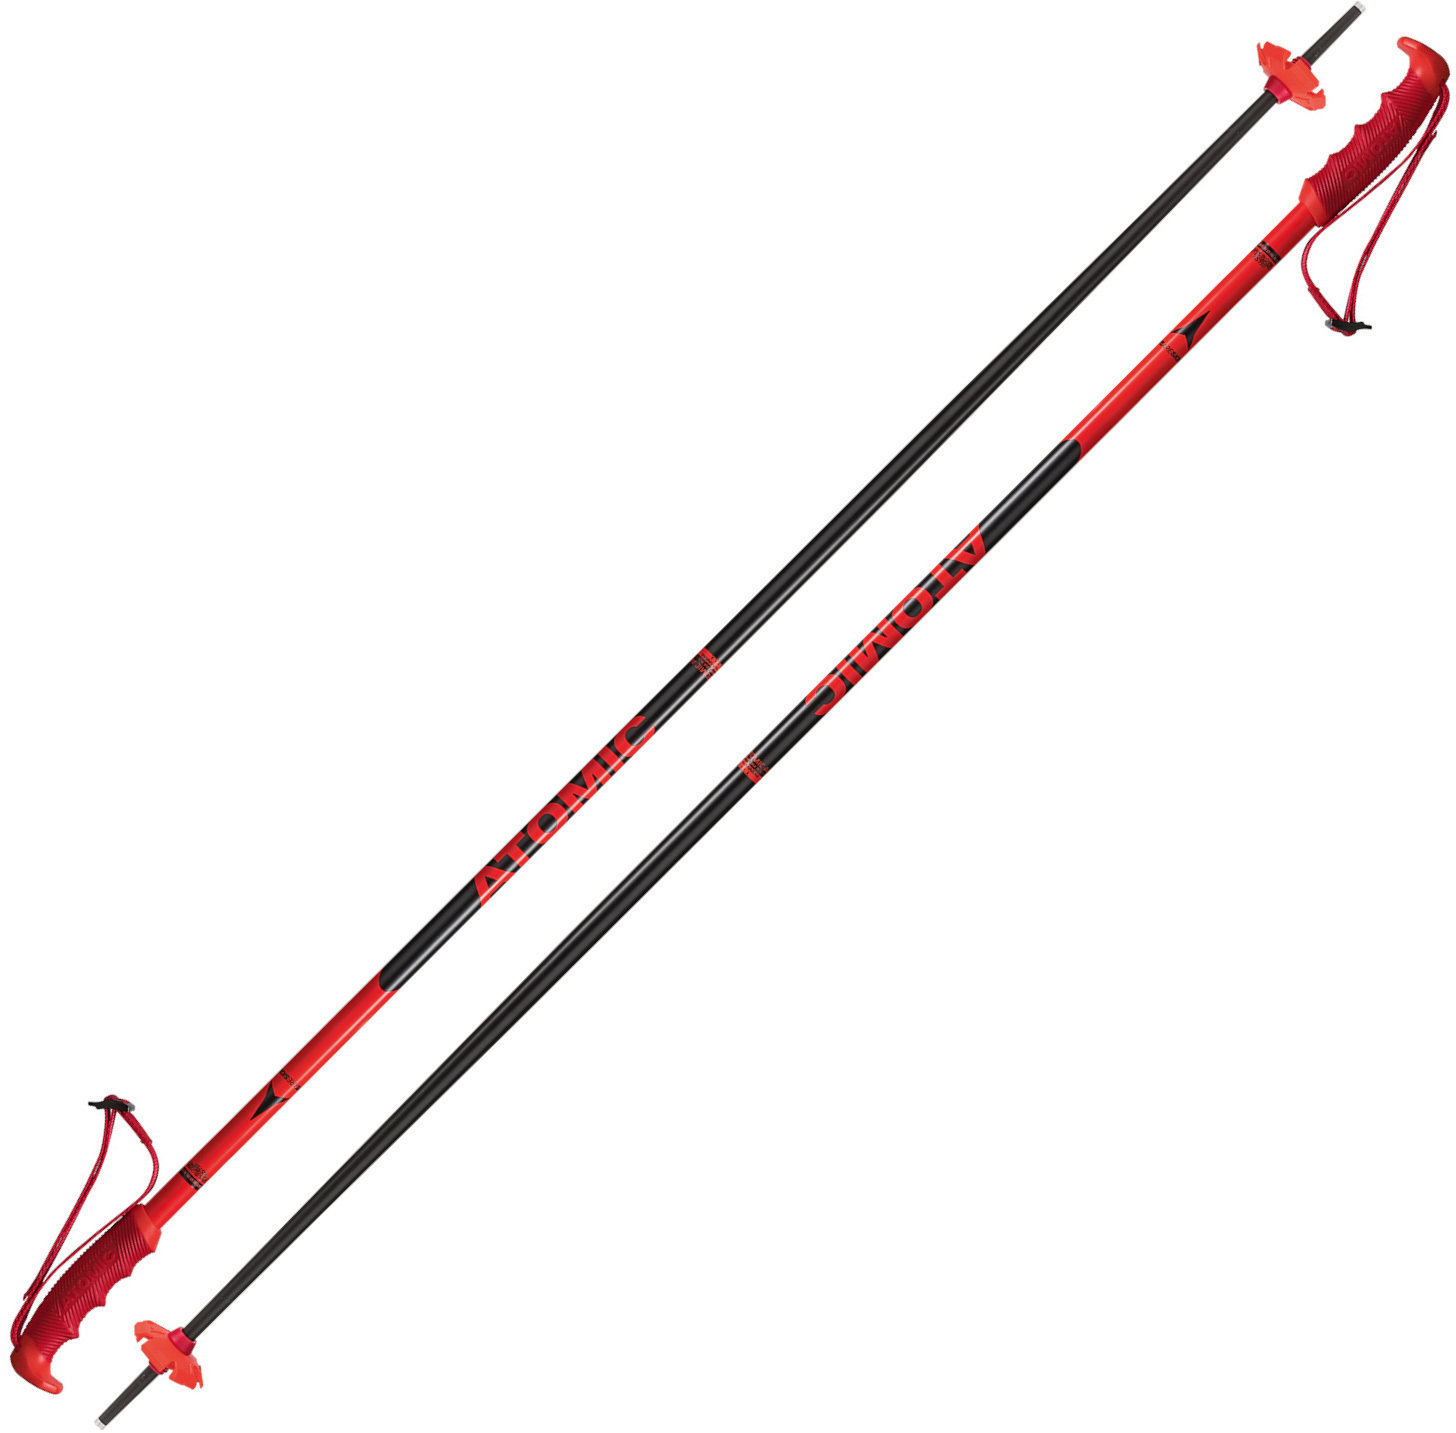 Ski Poles Atomic Redster Red/Black 130 cm Ski Poles